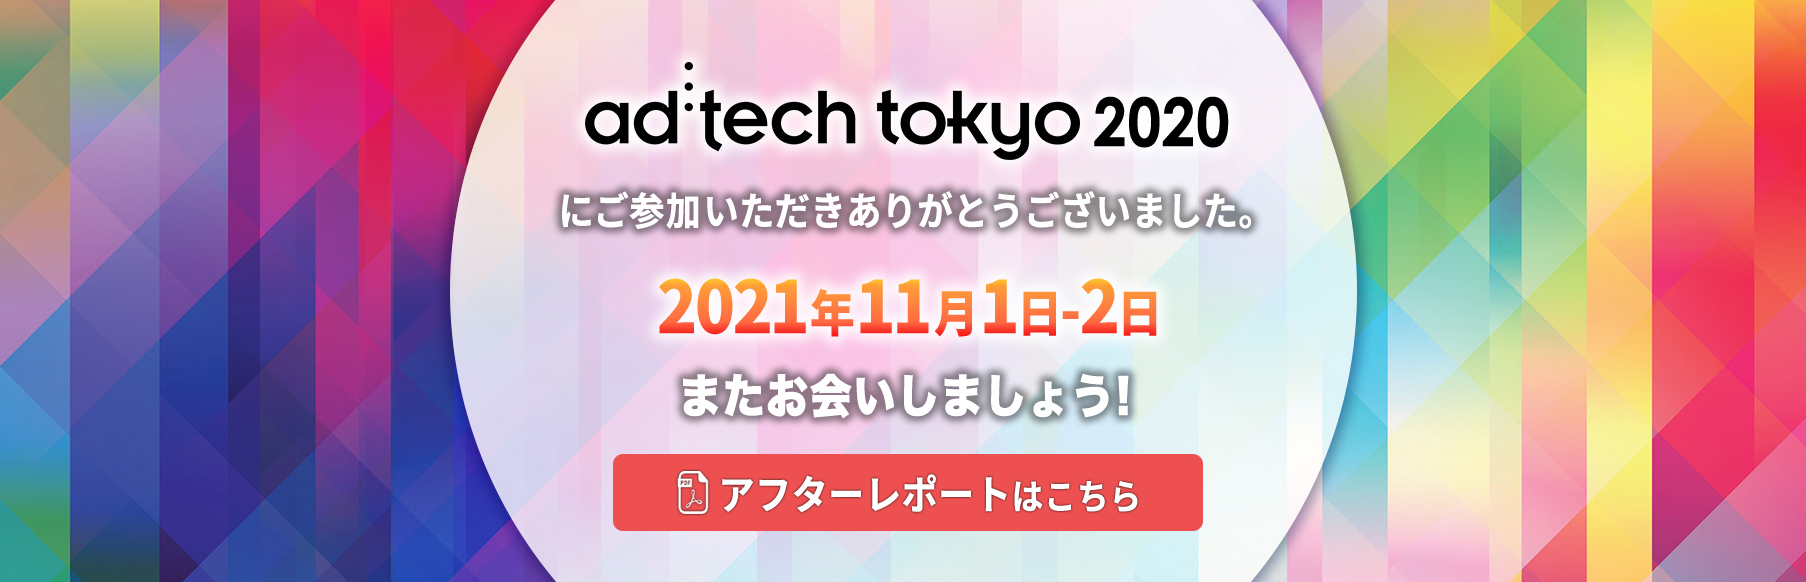 ad:techtokyo2020にご参加いただきありがとうございました。2021年11月1日-2日 またお会いしましょう！